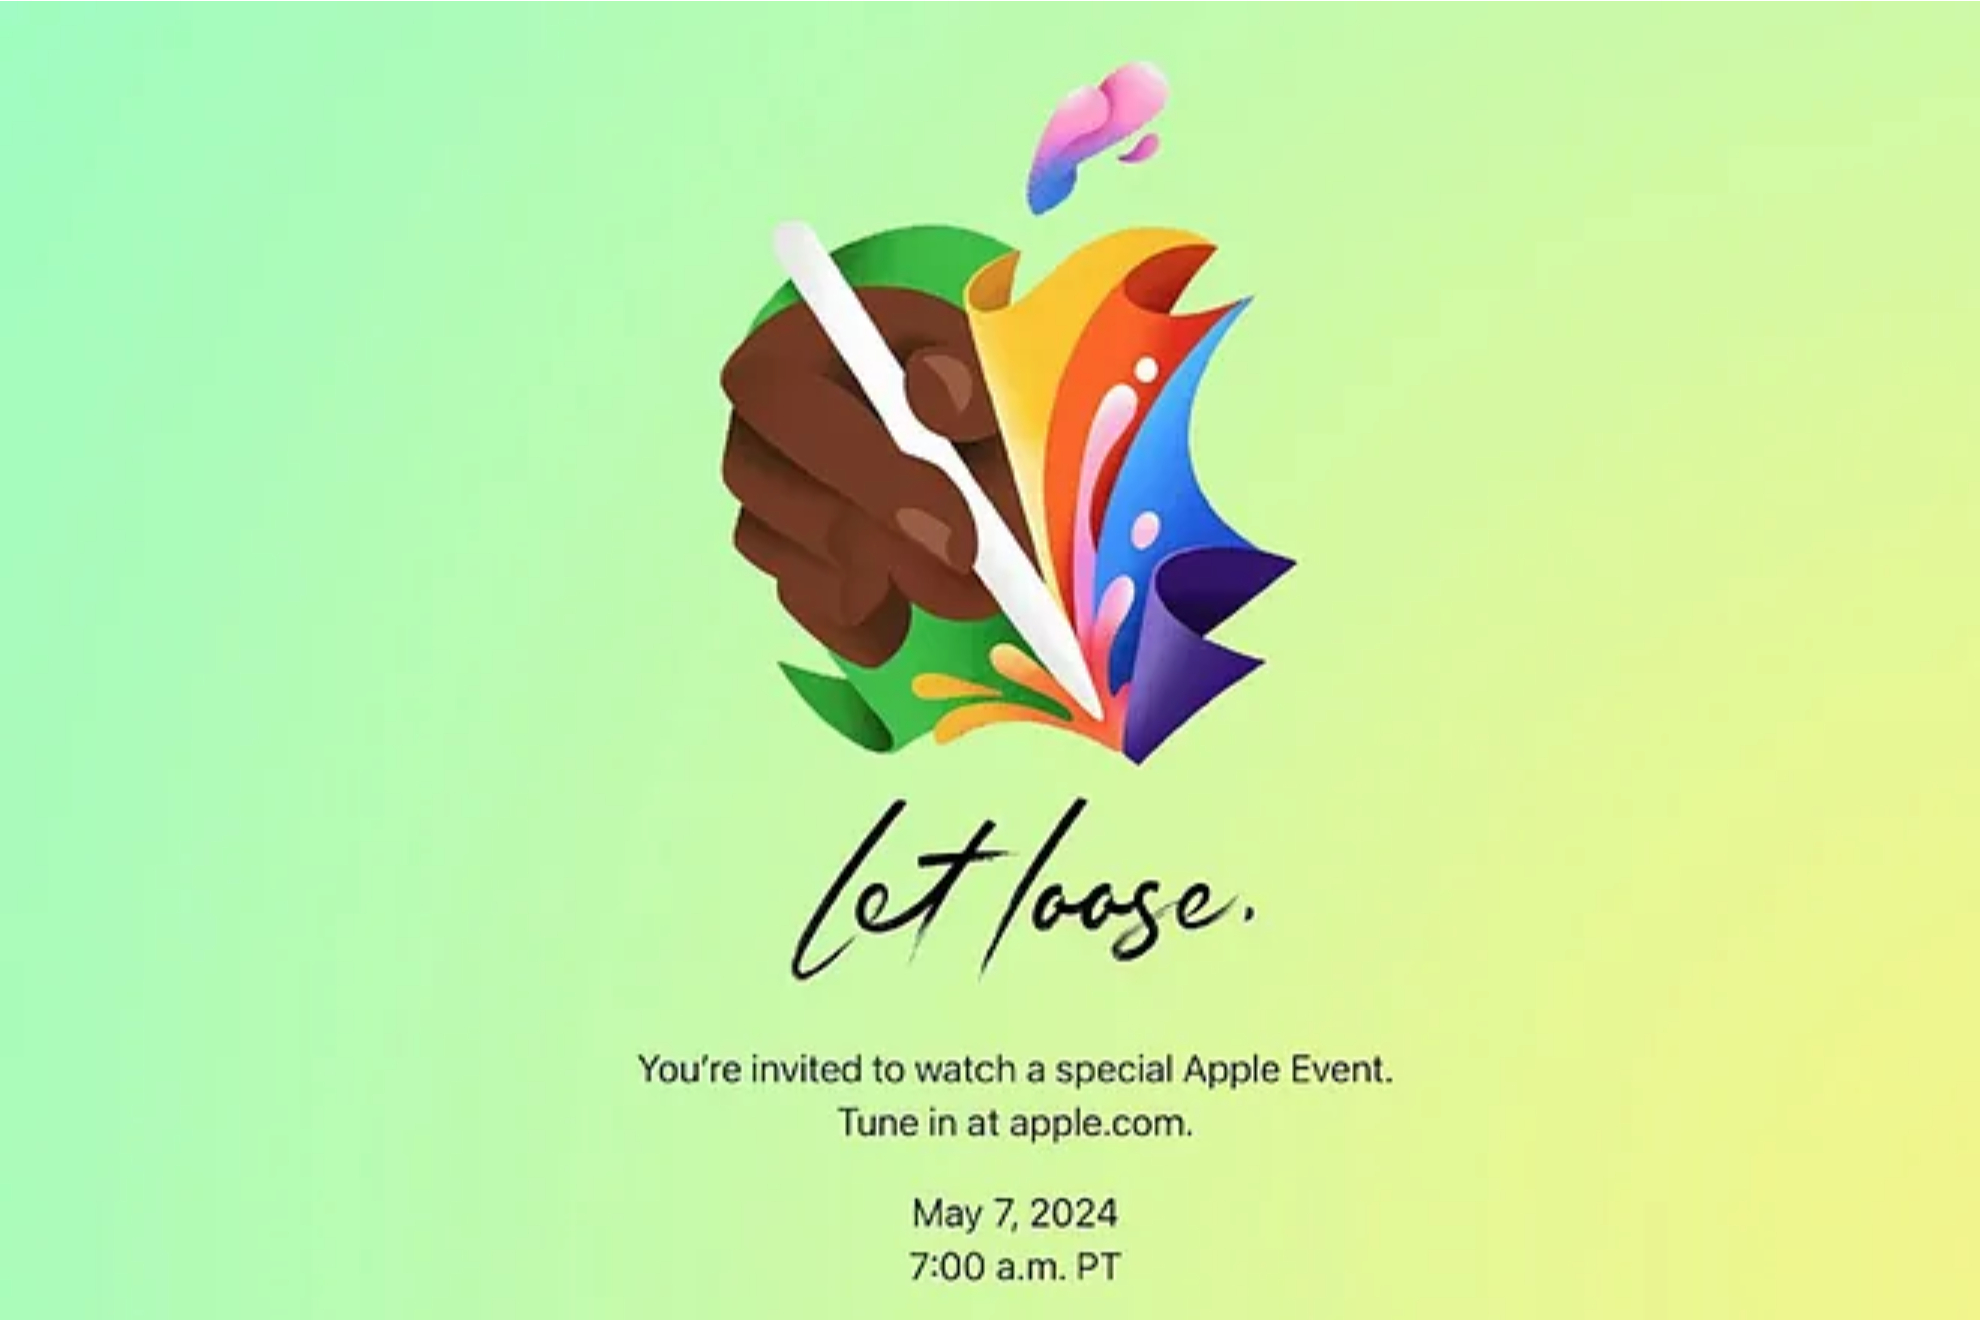 La invitacin al Evento Apple: "Let Loose"